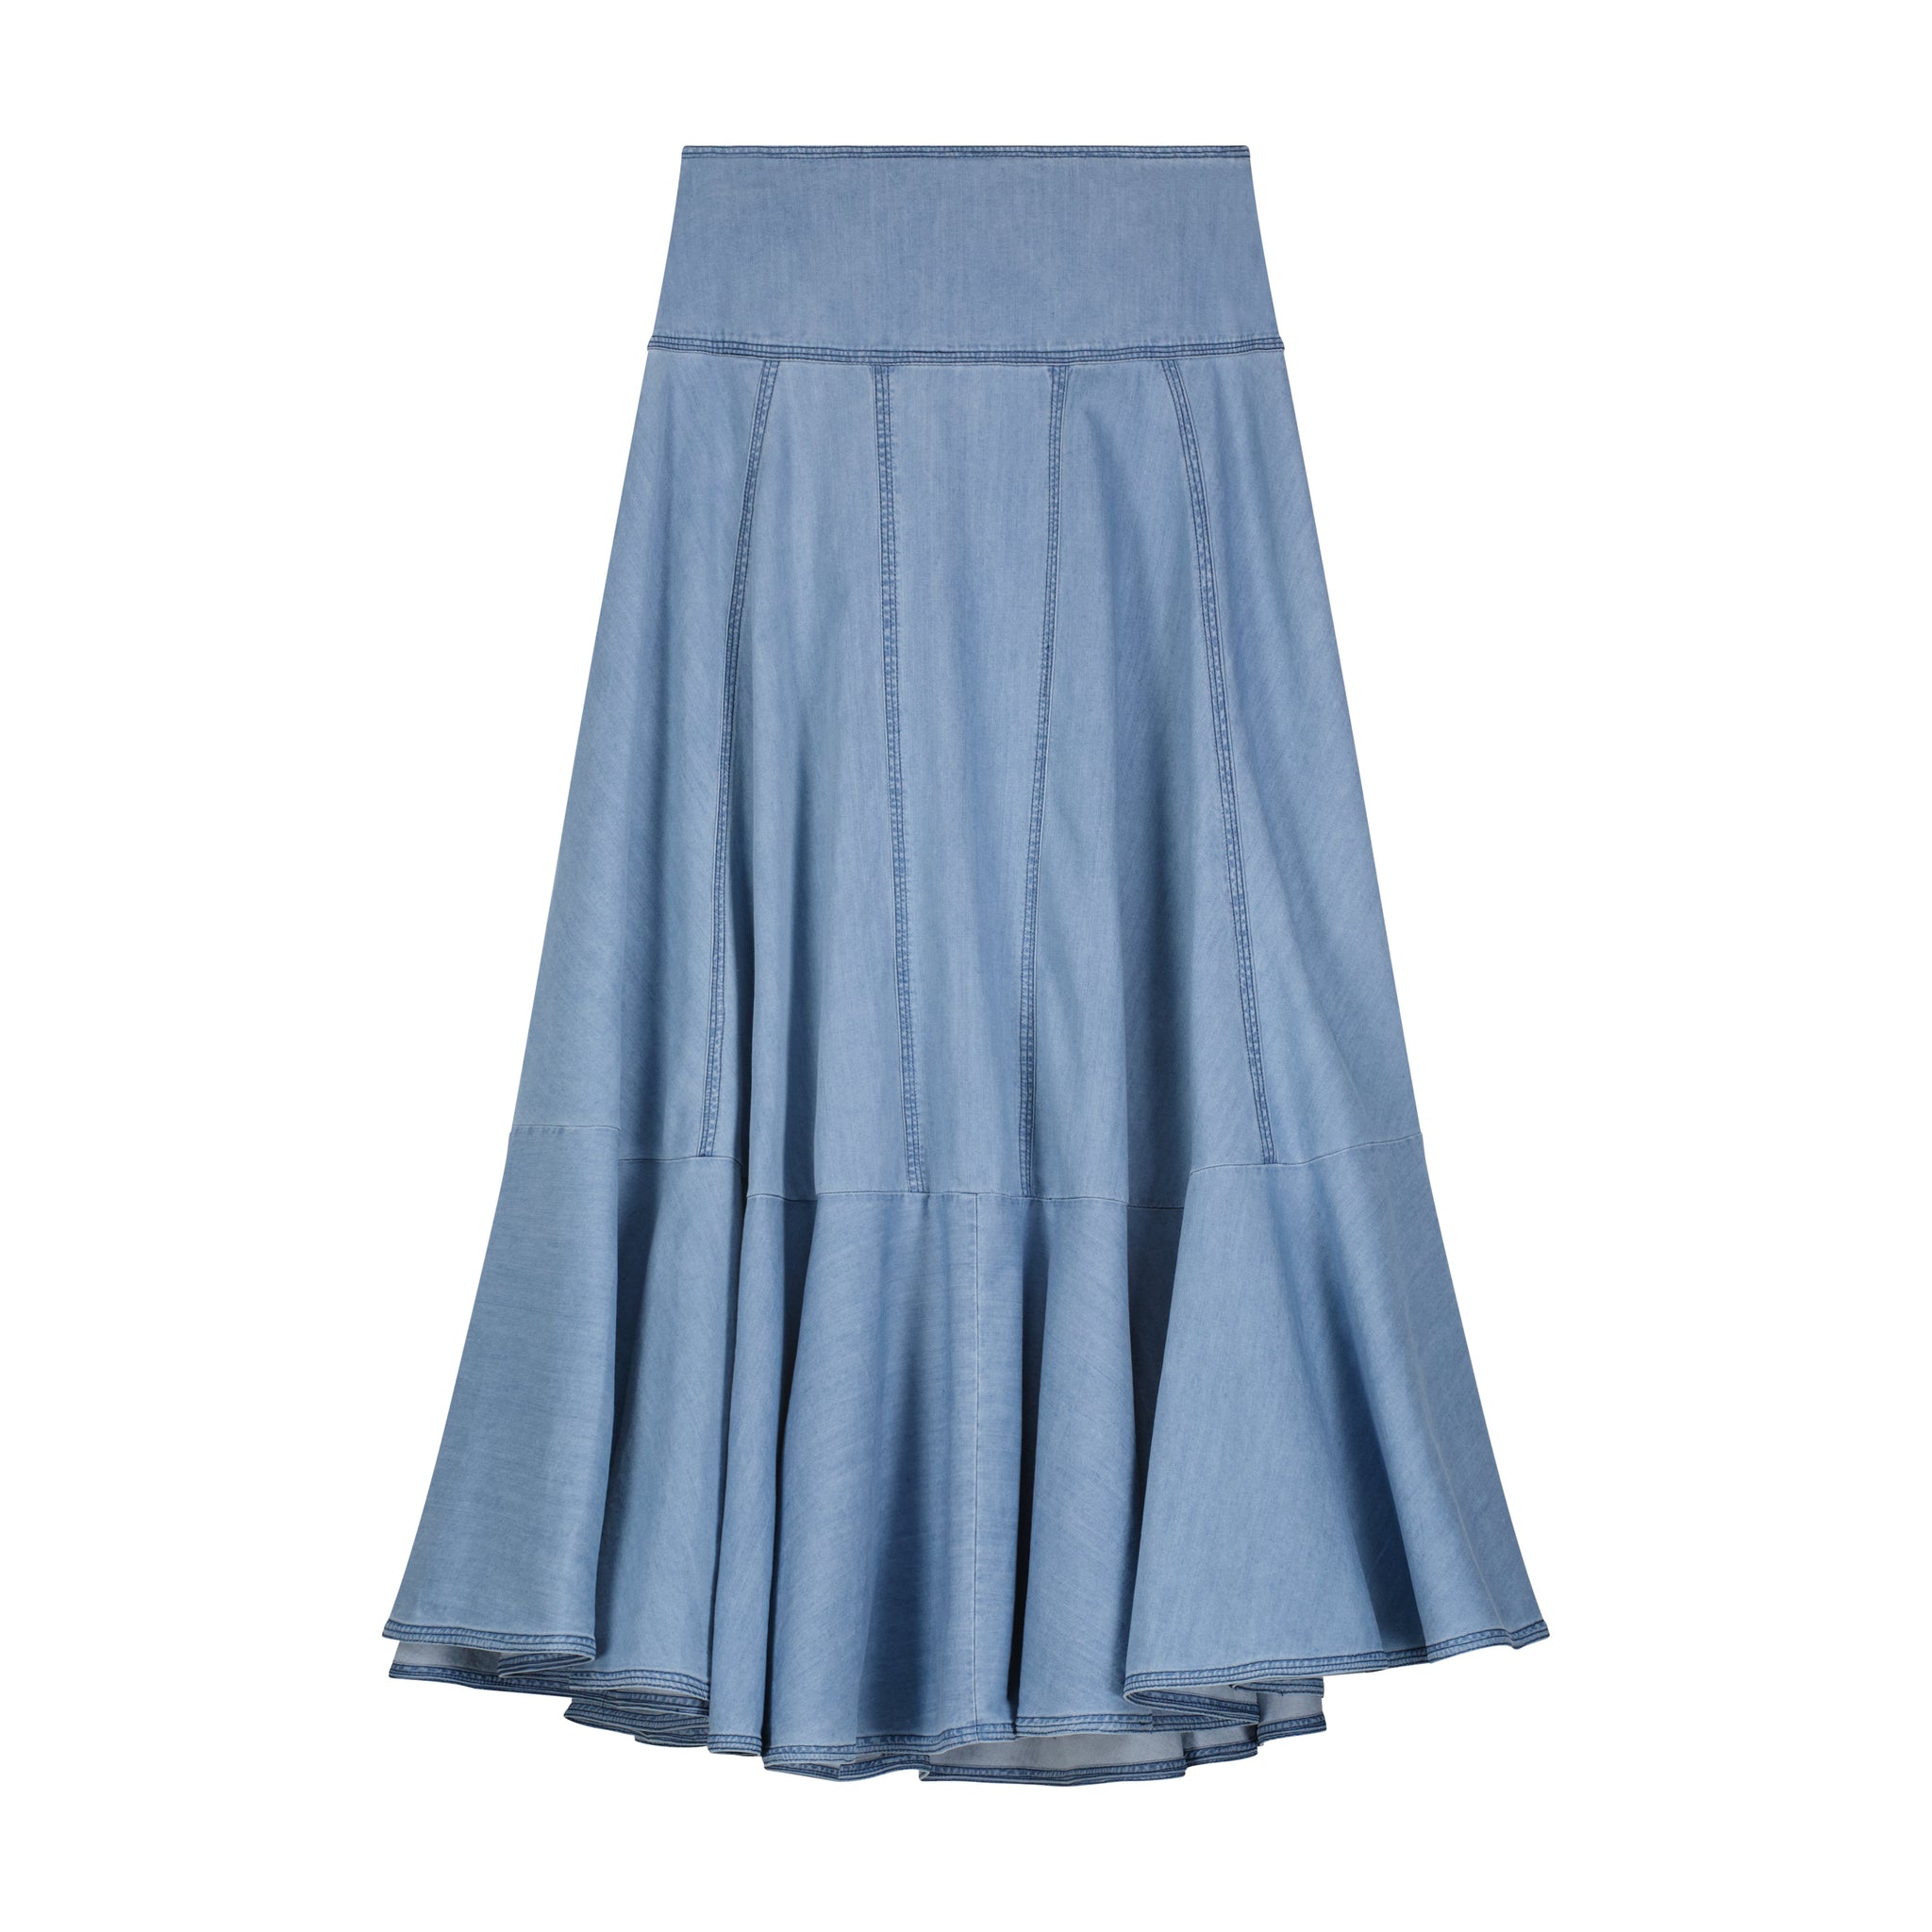 Bliss Yoke Aline Denim Skirt Light Blue